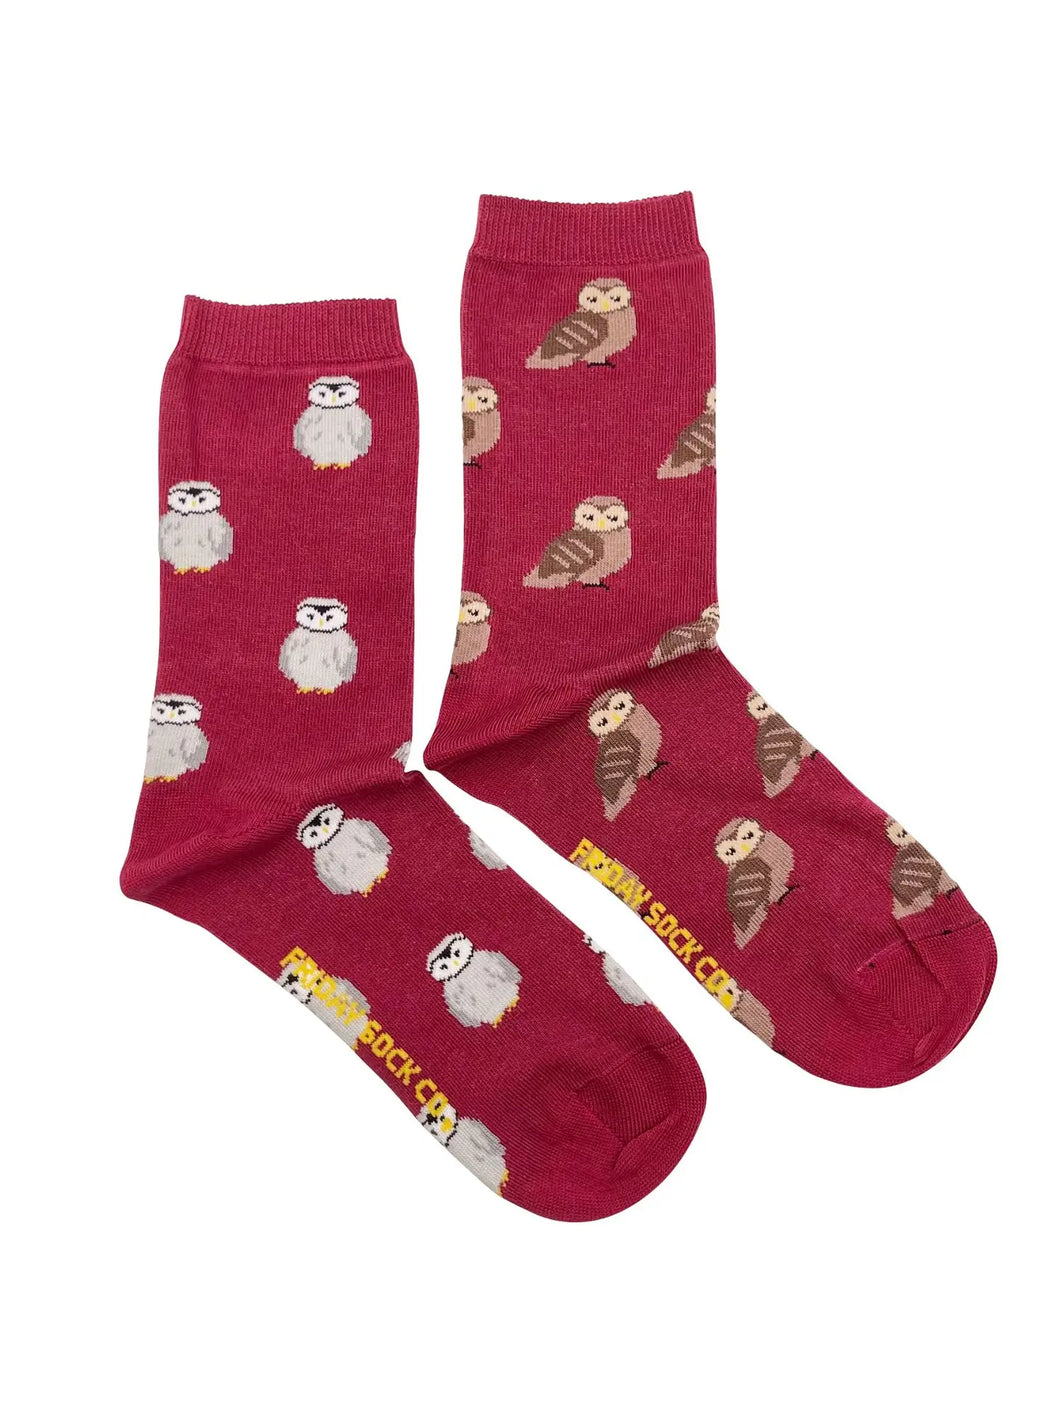 women's socks - owls